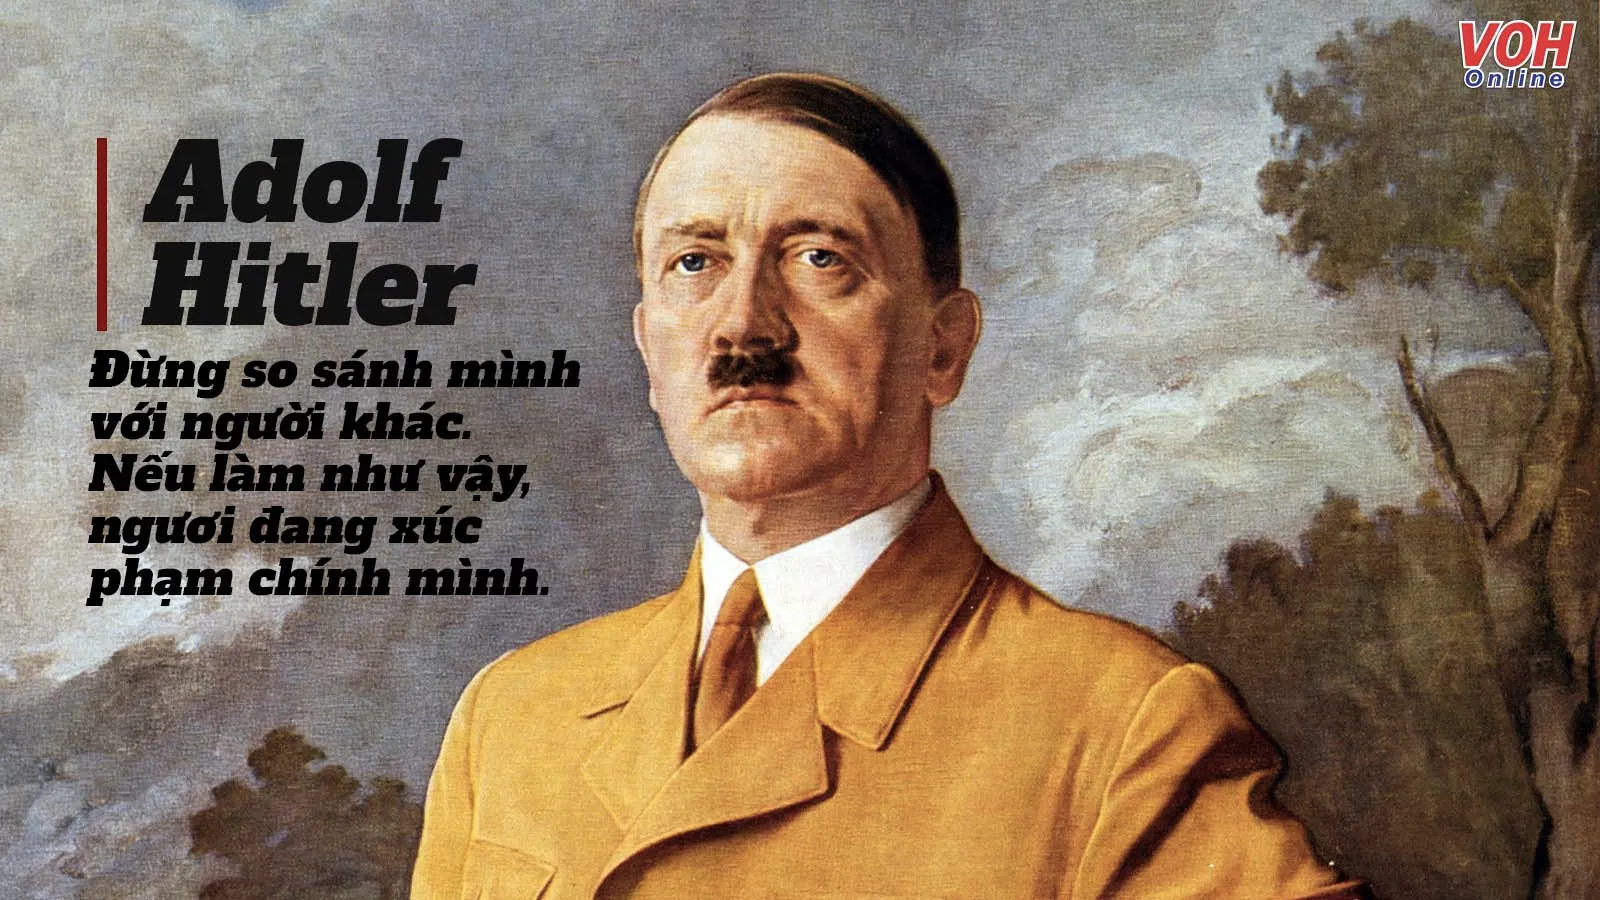 Những câu nói nổi tiếng của Adolf Hitler - Tên trùm phát xít Đức tàn độc nhất nhân loại